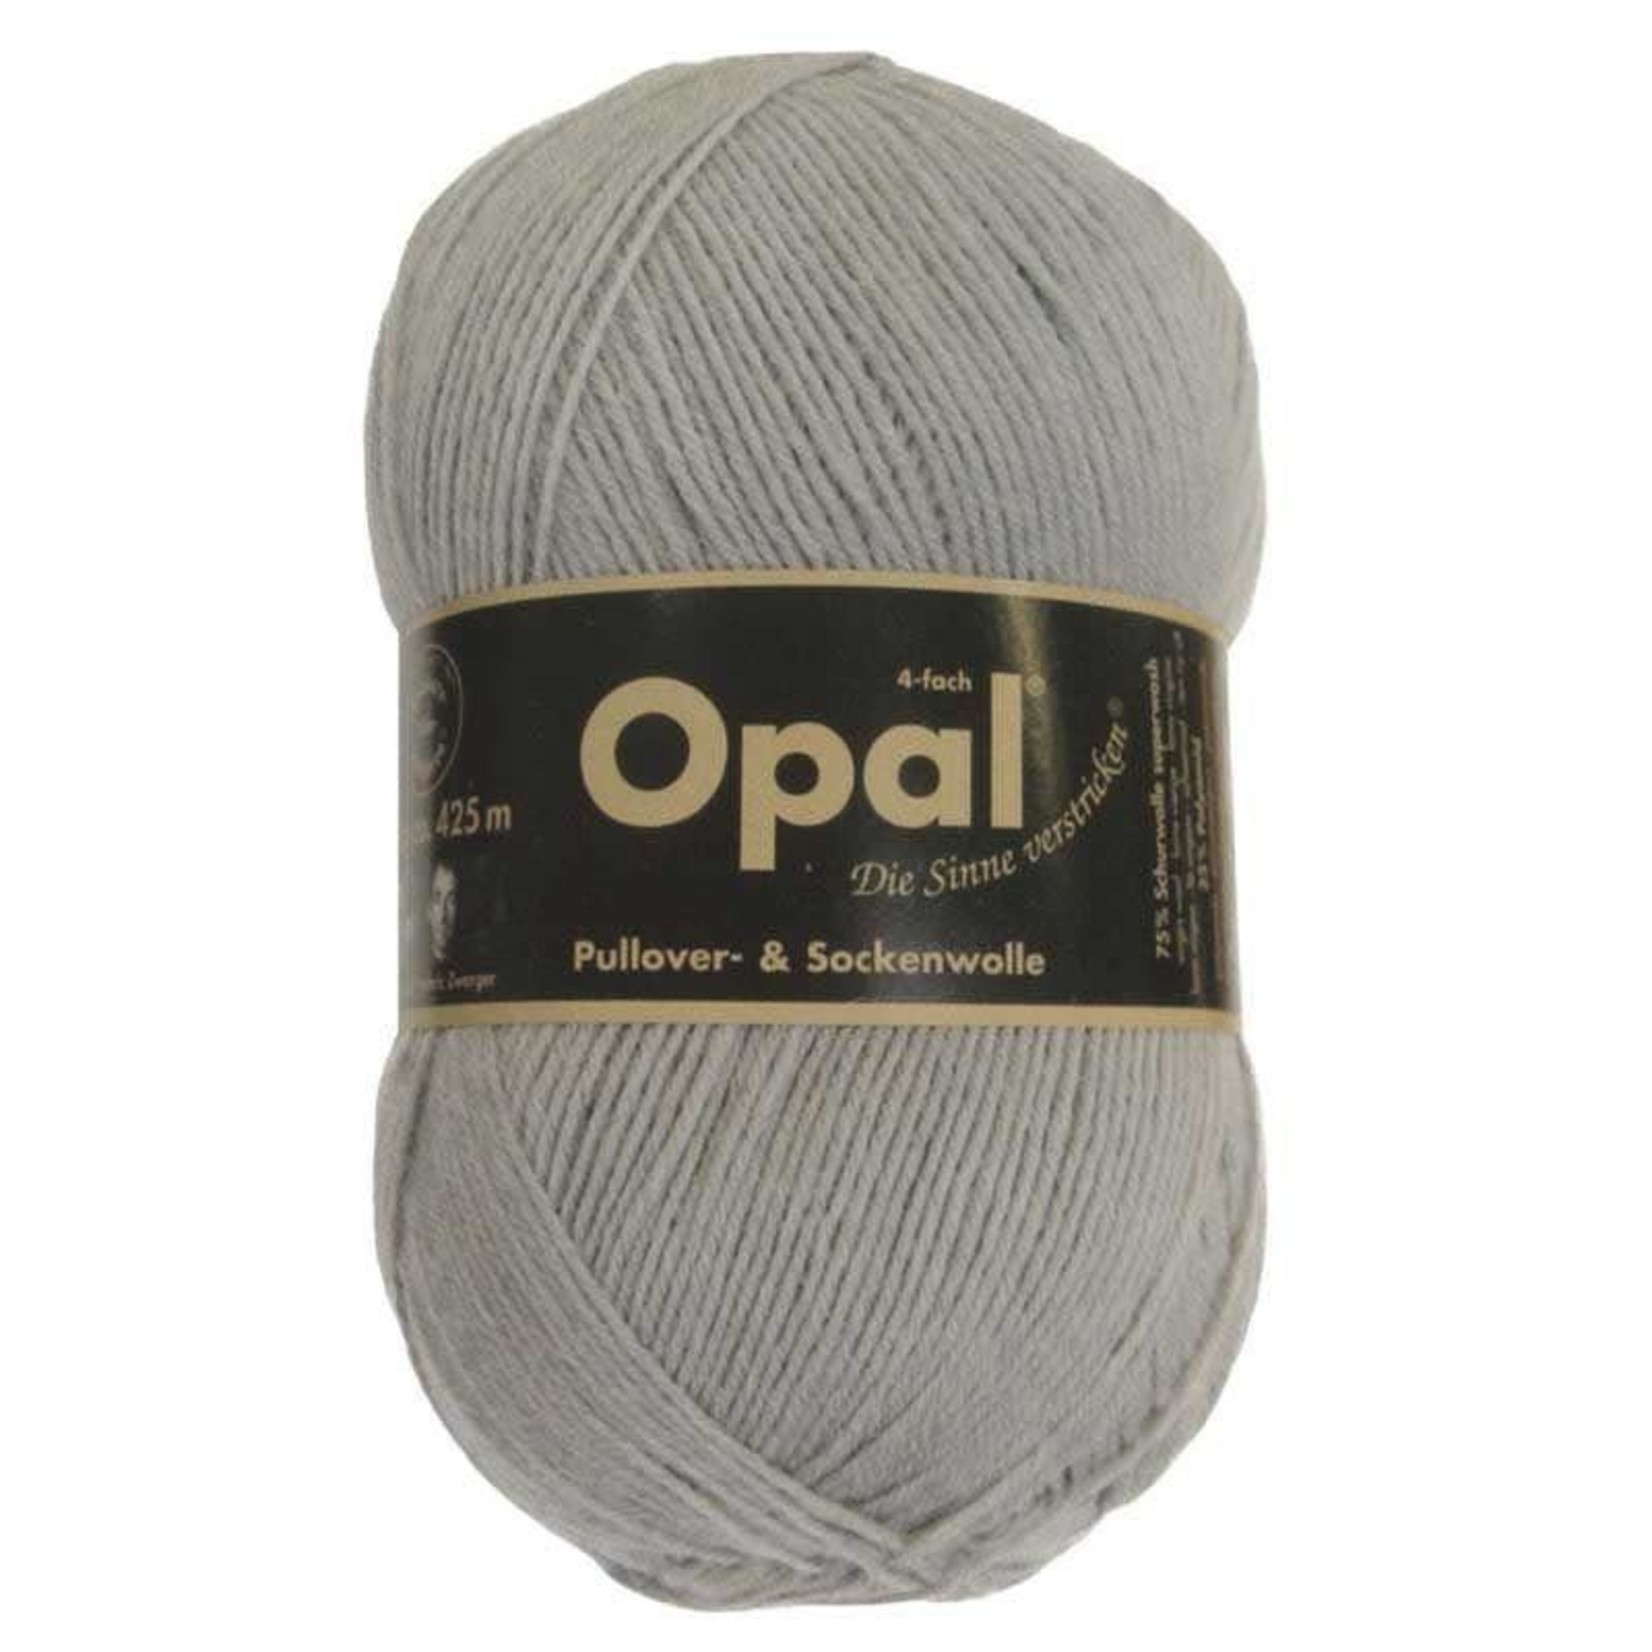 Opal Yarn Solid Sock Yarn by Opal